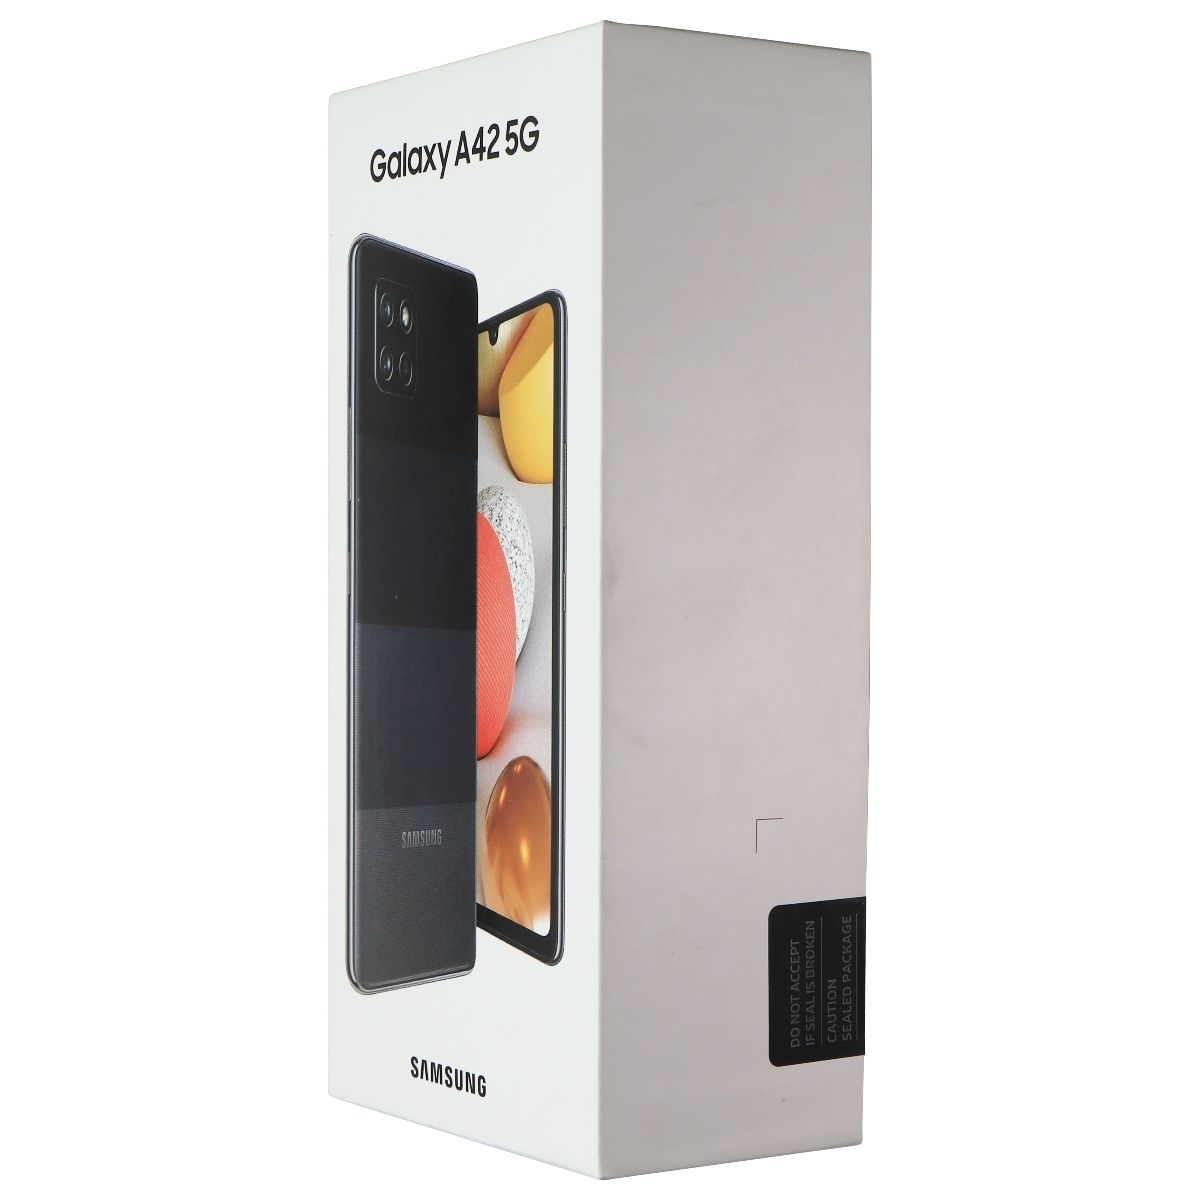 Samsung Galaxy A42 5G (6.6-inch) Smartphone (SM-A426U) Unlocked - 128GB/Black (Refurbished)